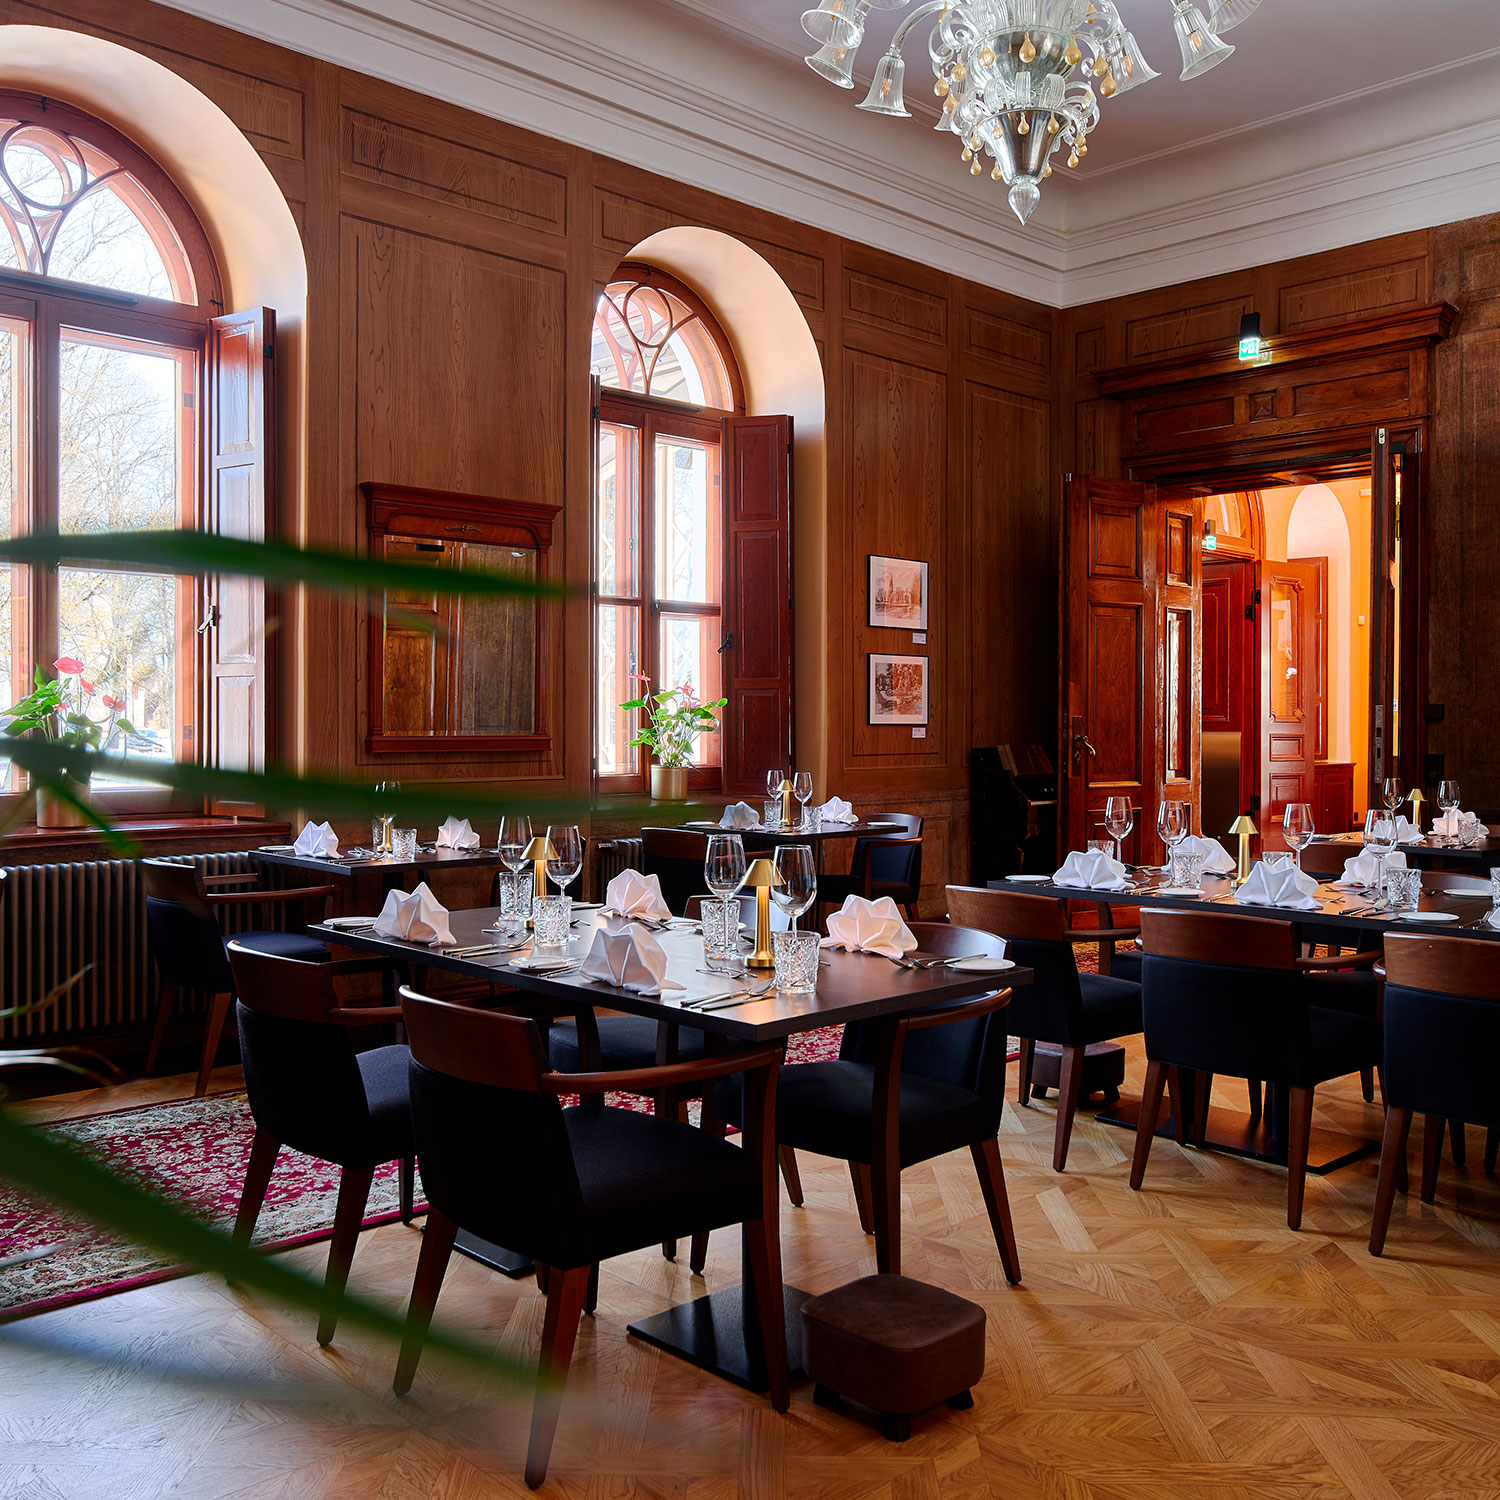 Restaurant Schloss